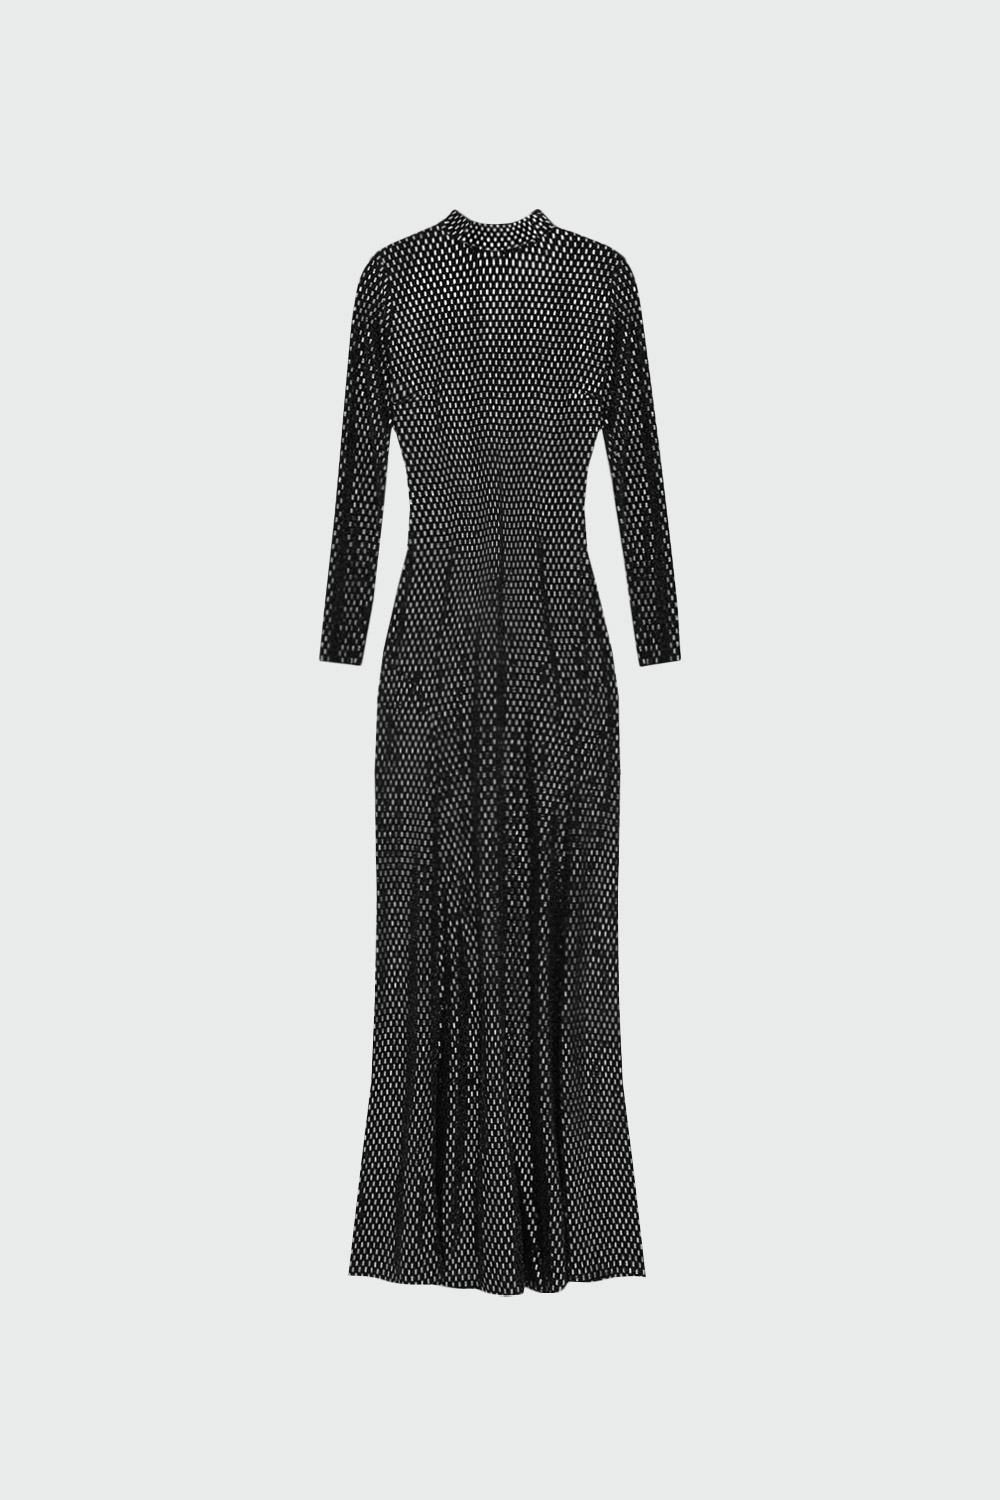 Yarım Boğaz Yırtmaçlı Parlak Siyah Kadın Elbise